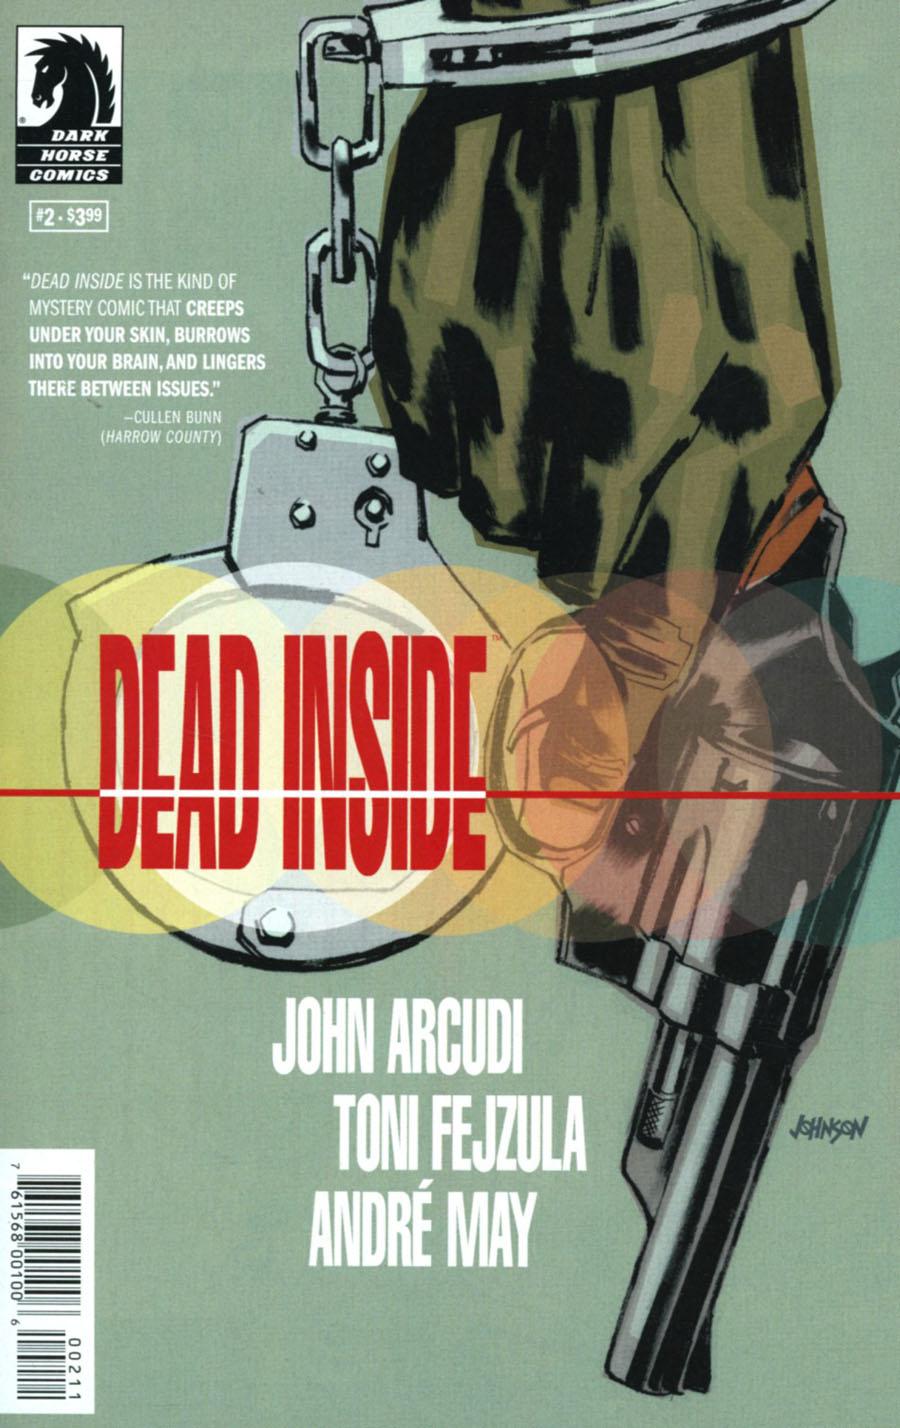 Dead Inside Vol. 1 #2